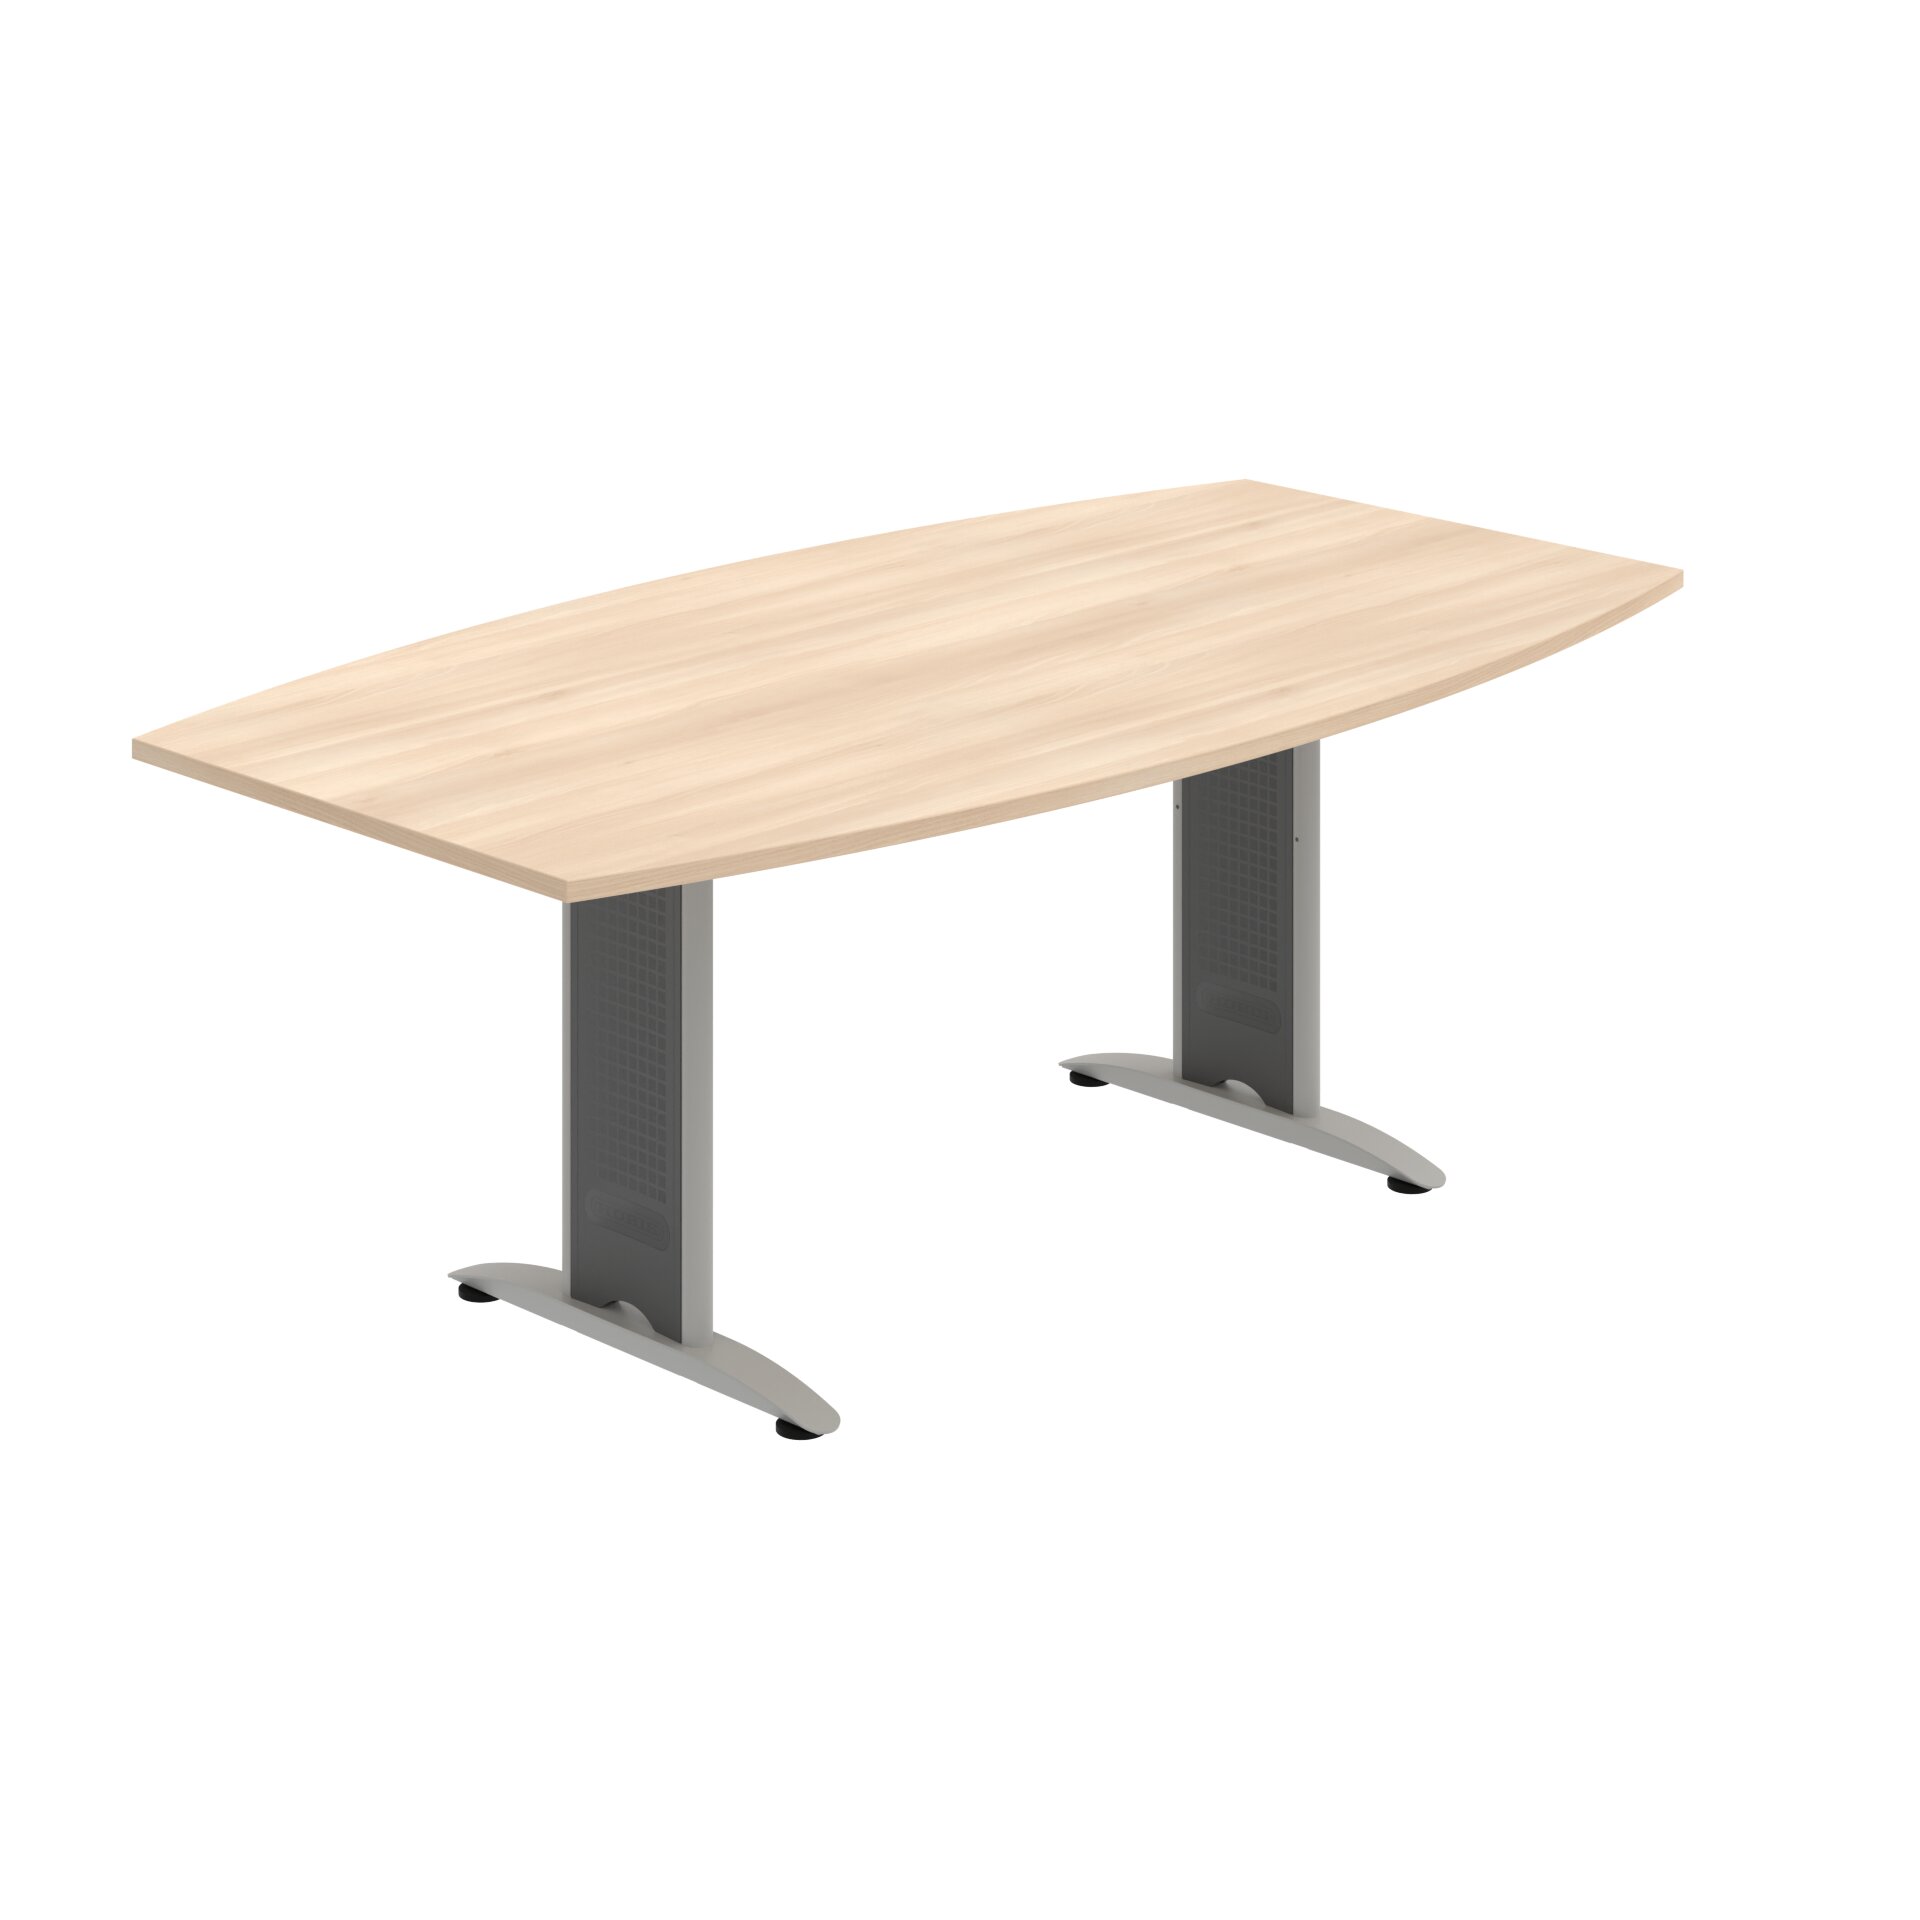 FJ 200 – Stůl jednací sud 200 cm